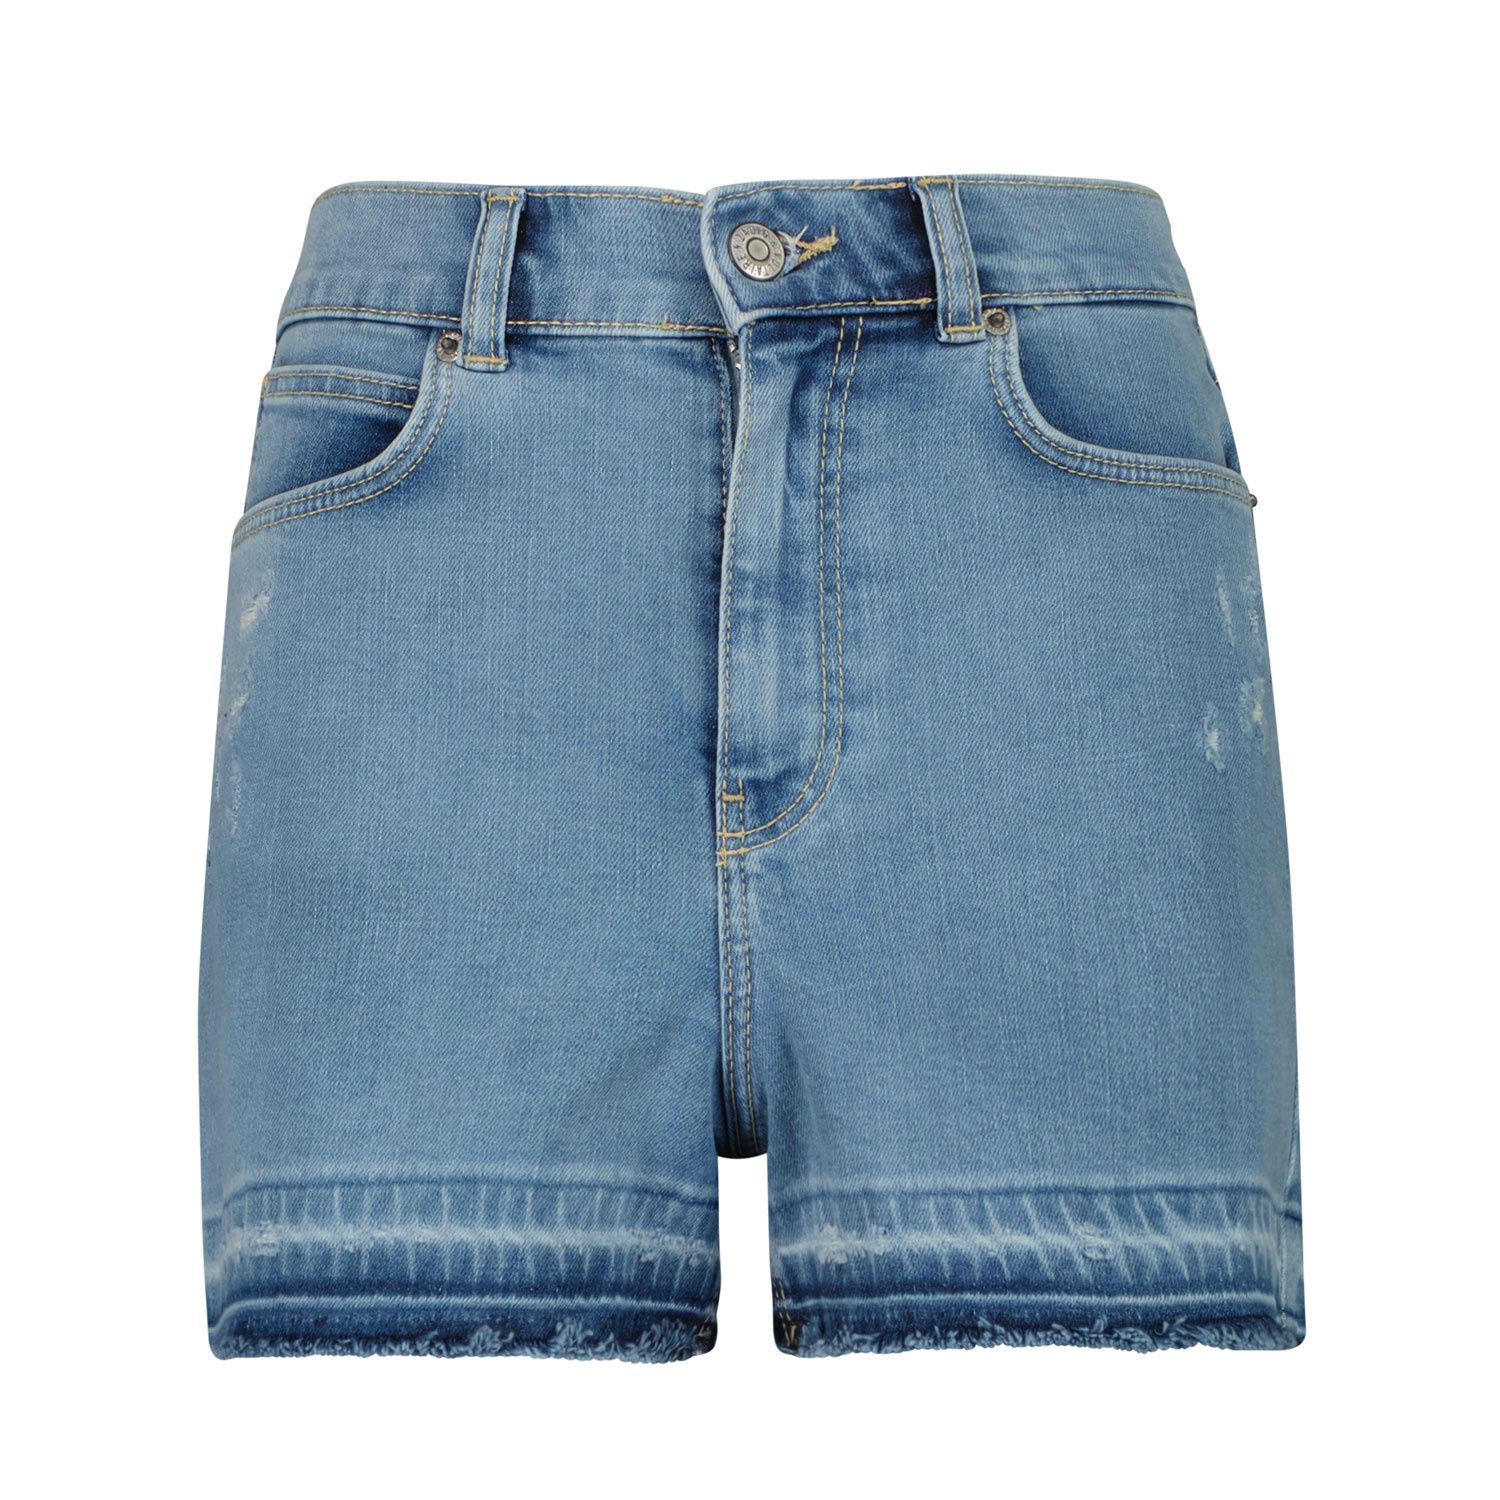 Afbeelding van Zadig & Voltaire X14132 kinder shorts jeans